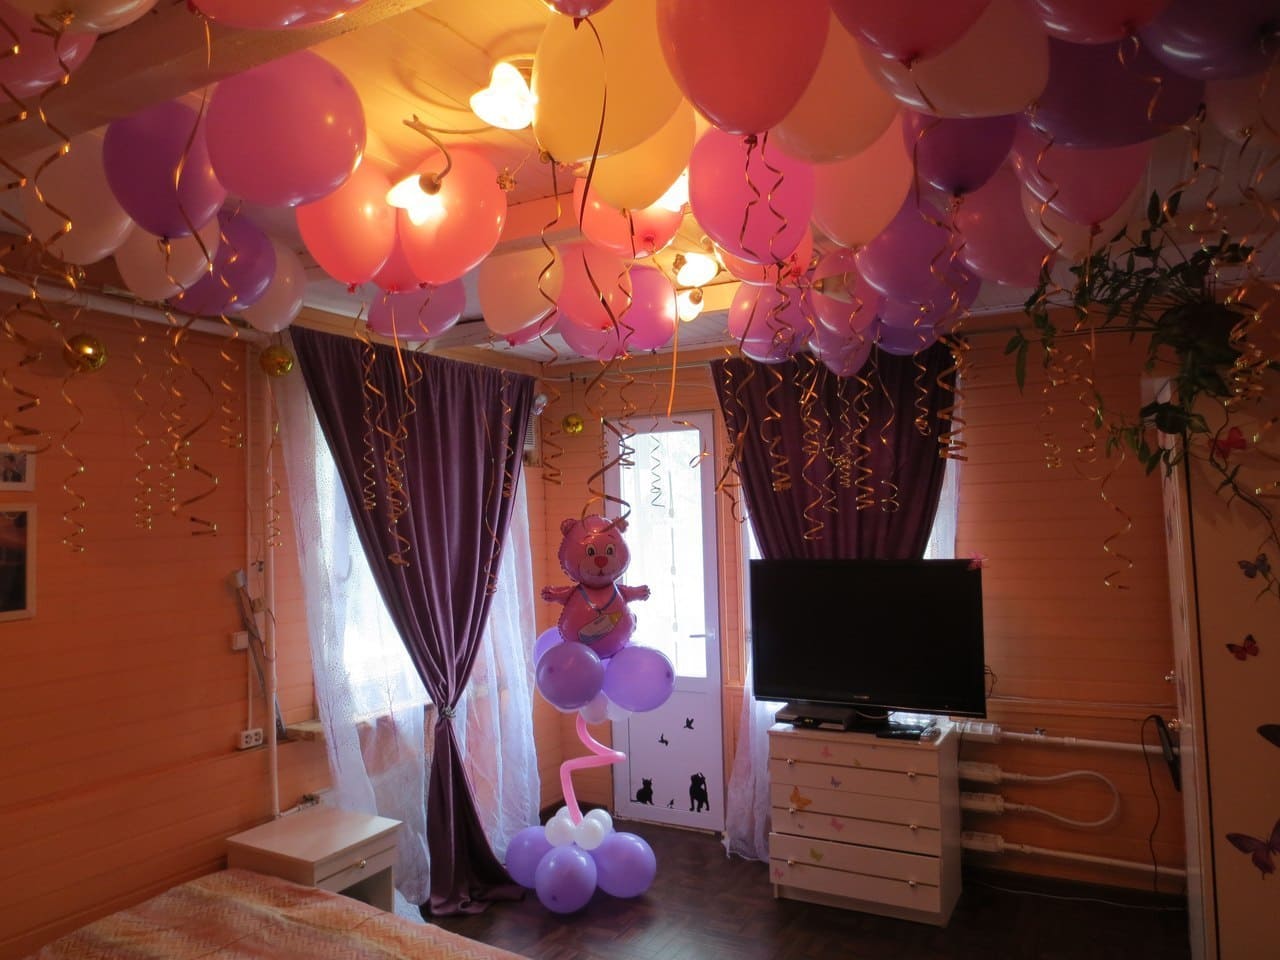 Купить дом шарами. Украшение комнаты шарами. Украшение комнаты шарами на день рождения. Украсить комнату шариками. Воздушные шары в комнате.